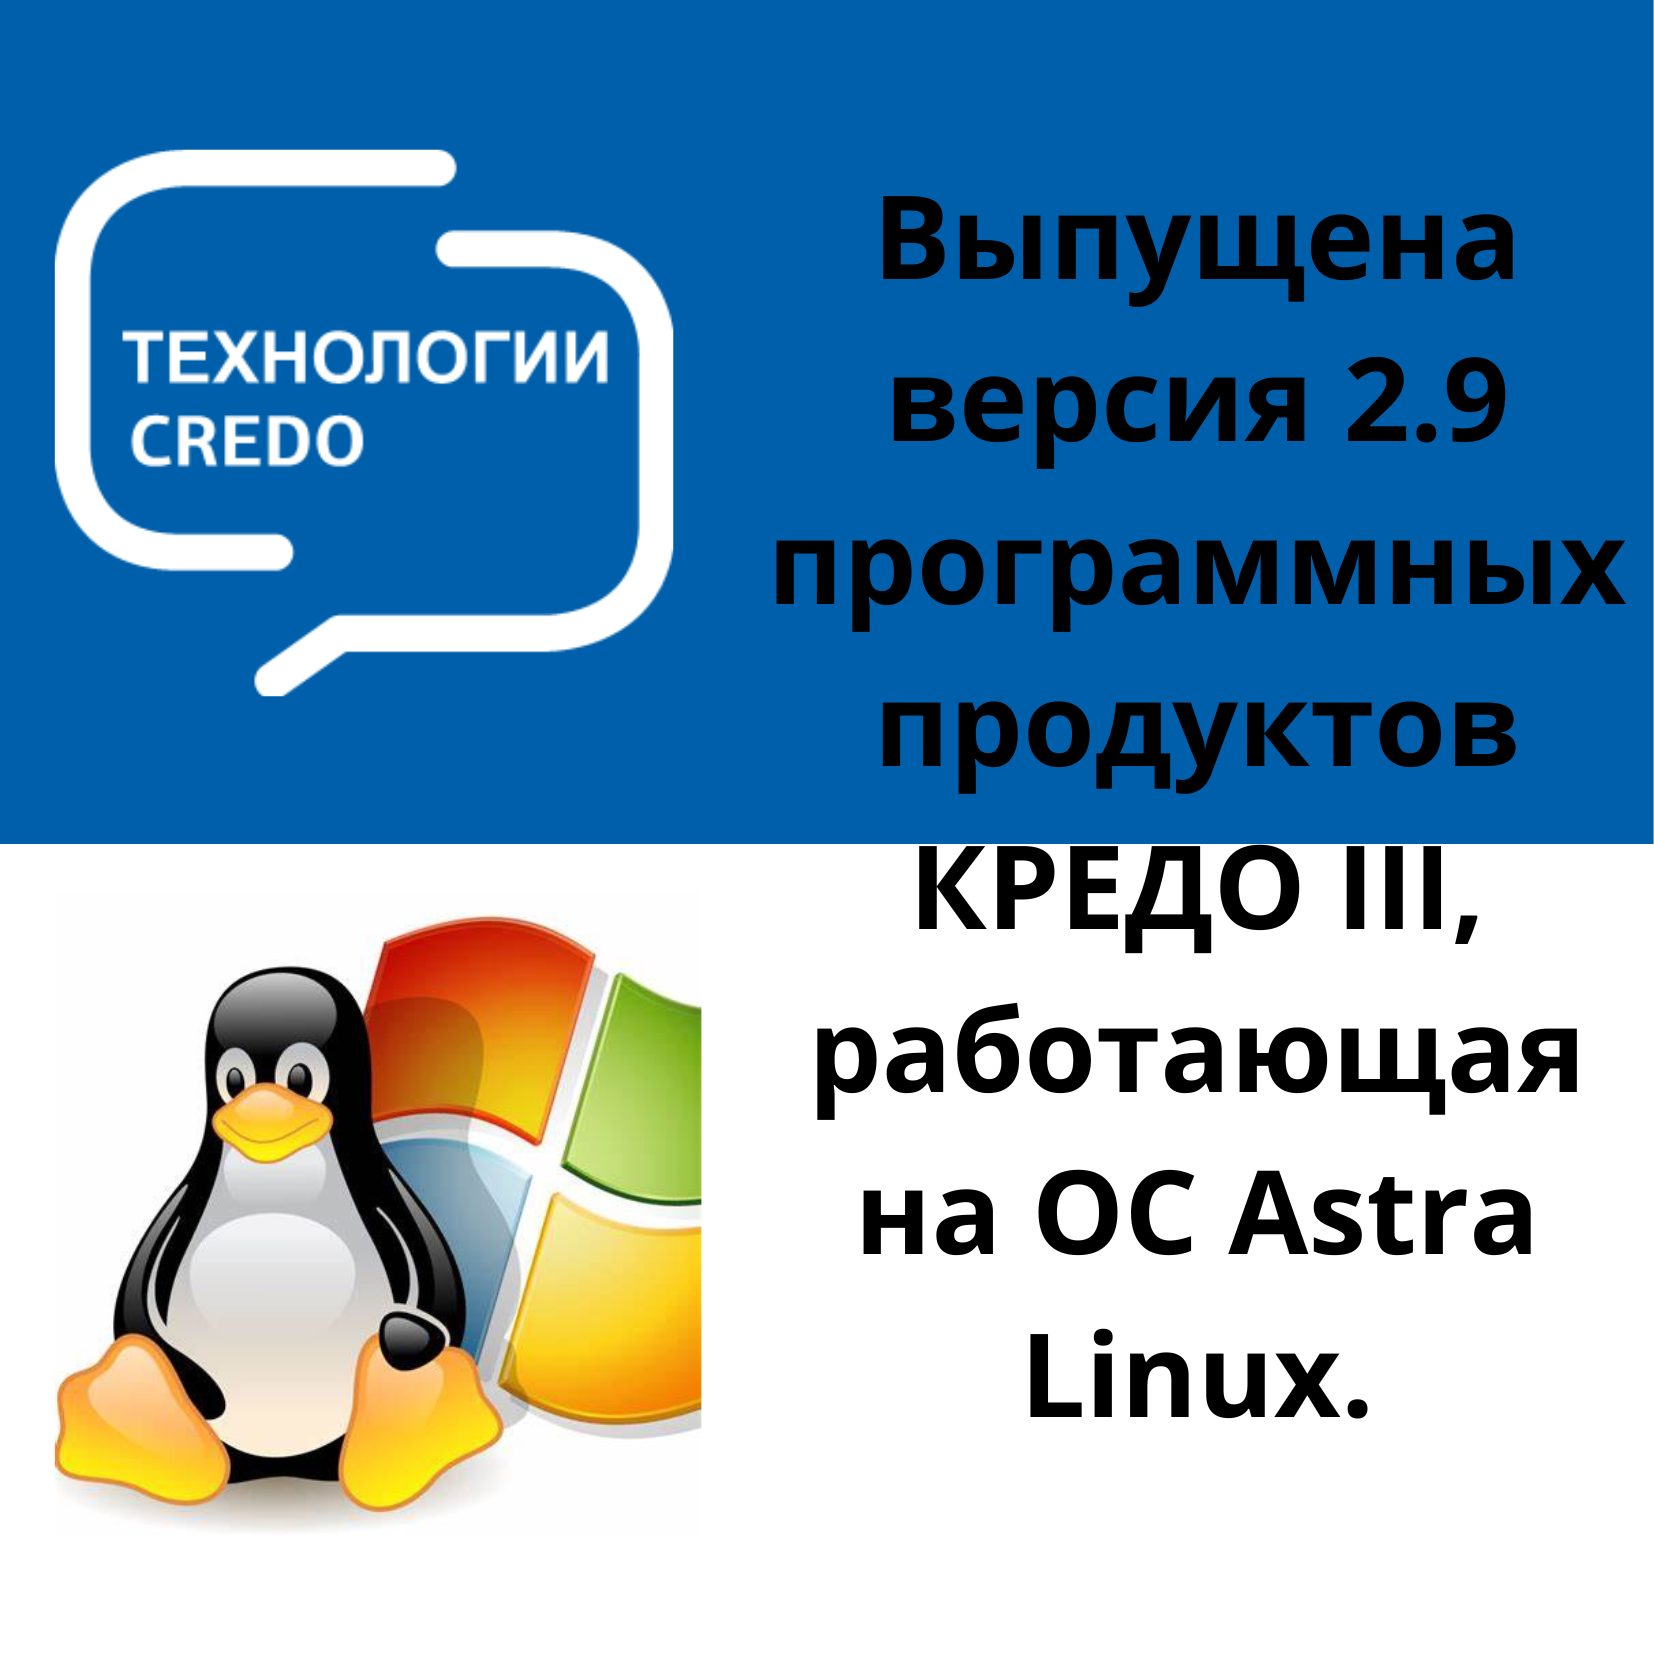 Выпущена версия 2.9 программных продуктов КРЕДО III, работающая на ОС Astra Linux.